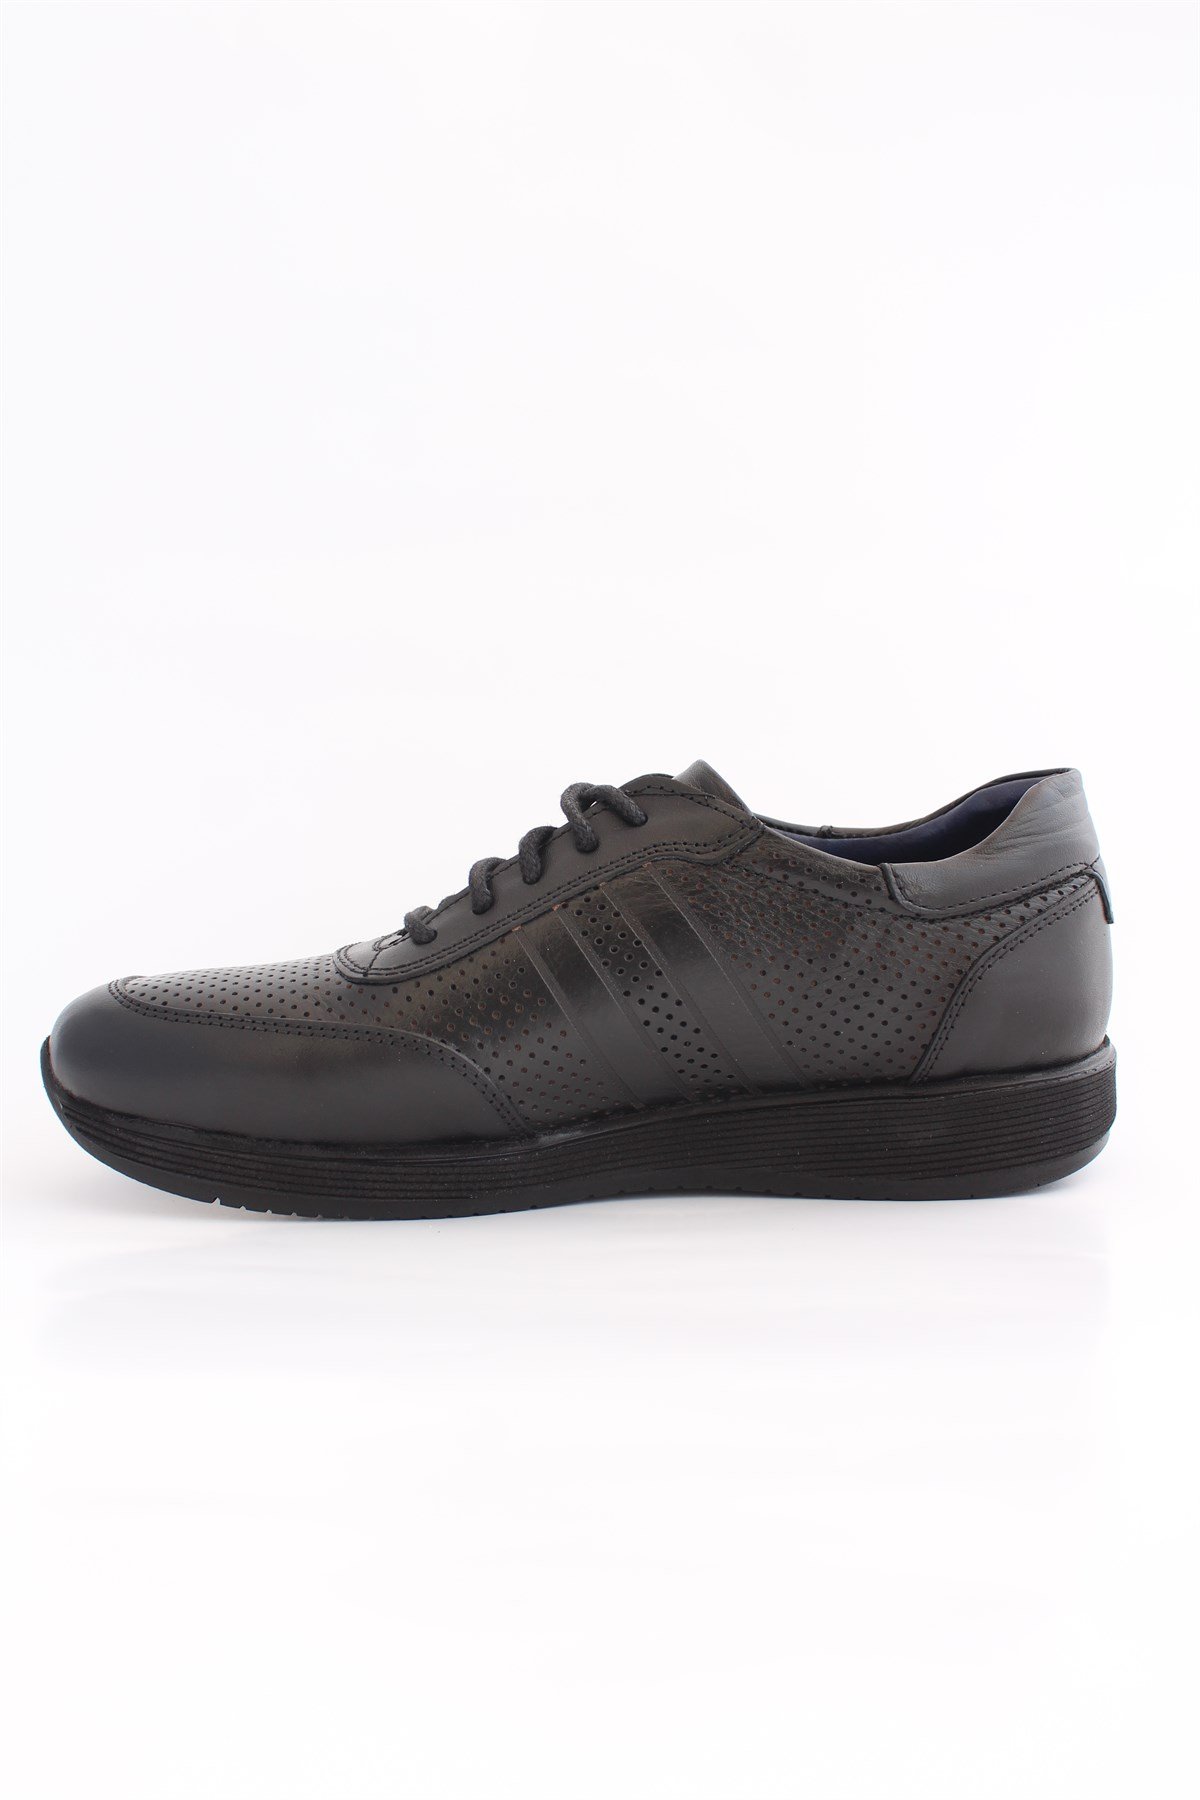 Mrd 0037 Poli Taban Siyah Deri Yazlık Erkek Ayakkabısı